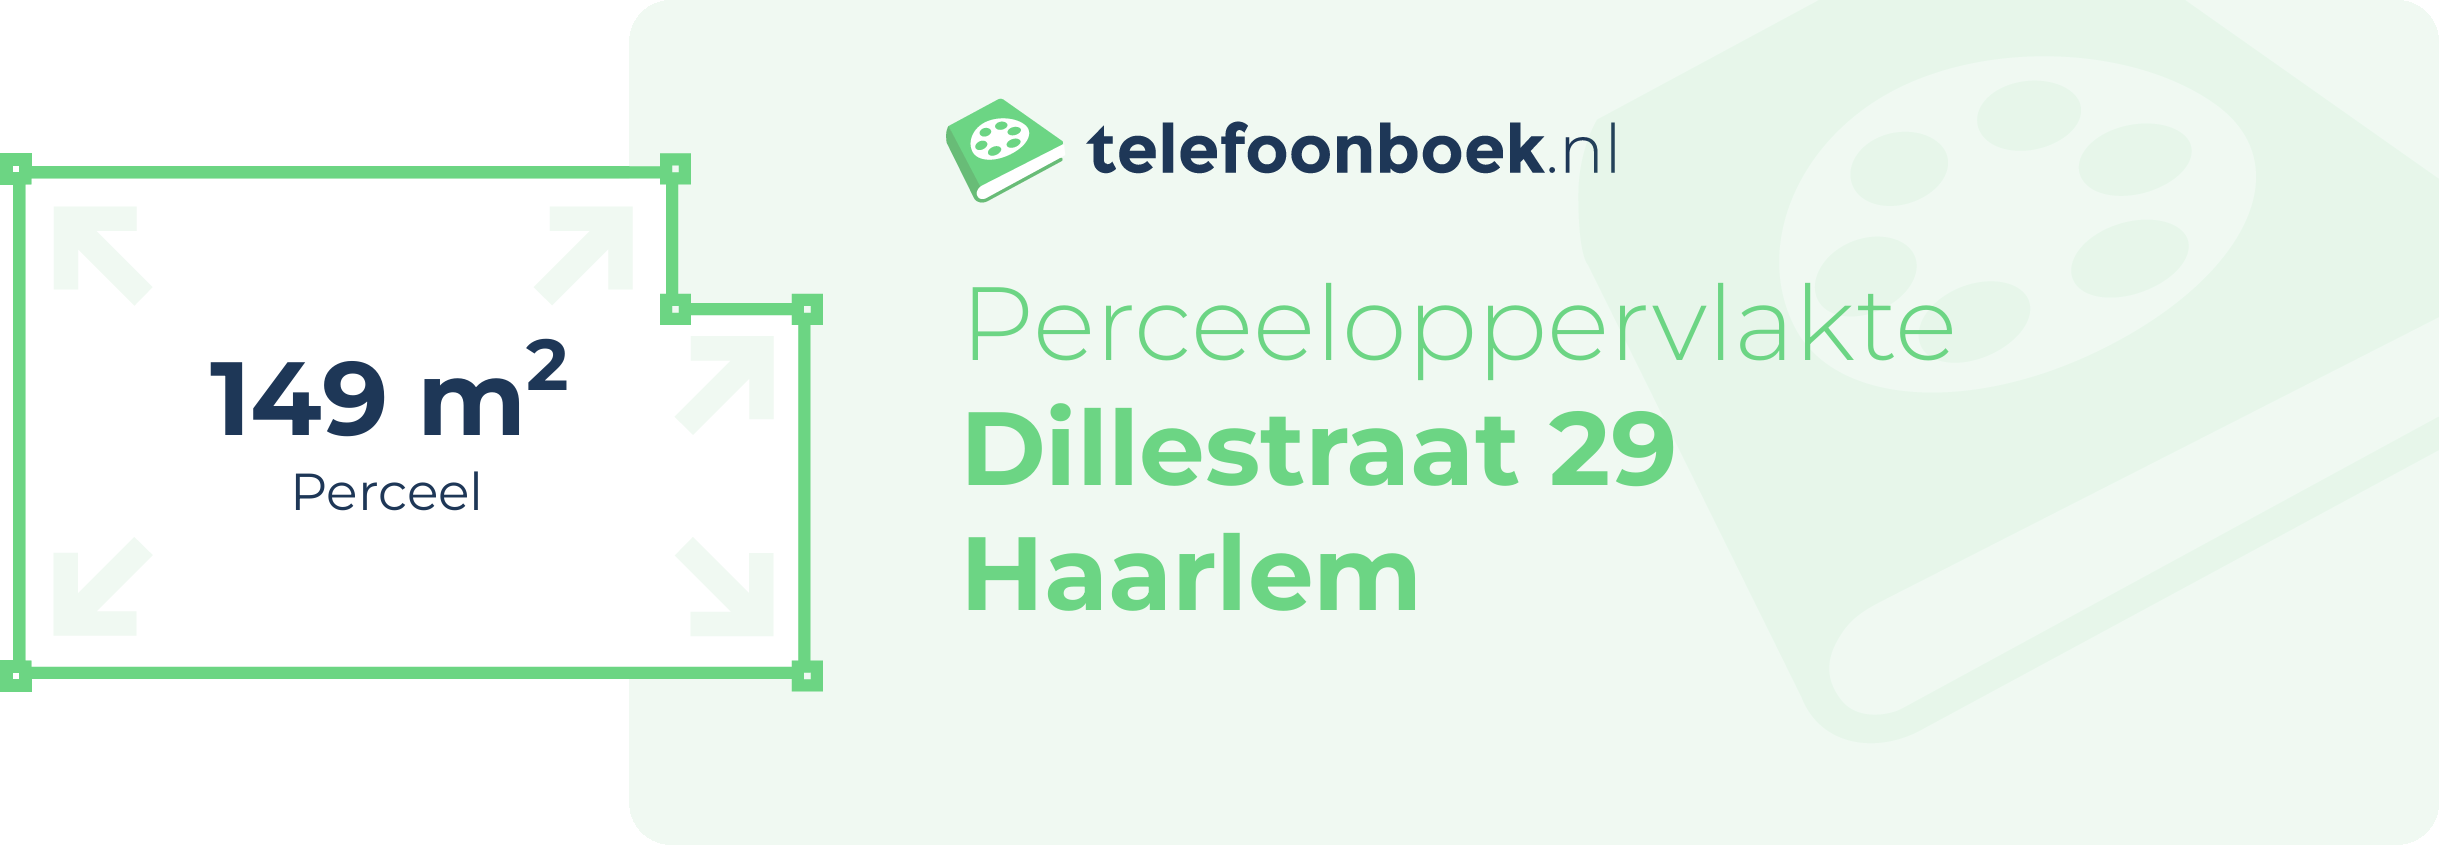 Perceeloppervlakte Dillestraat 29 Haarlem